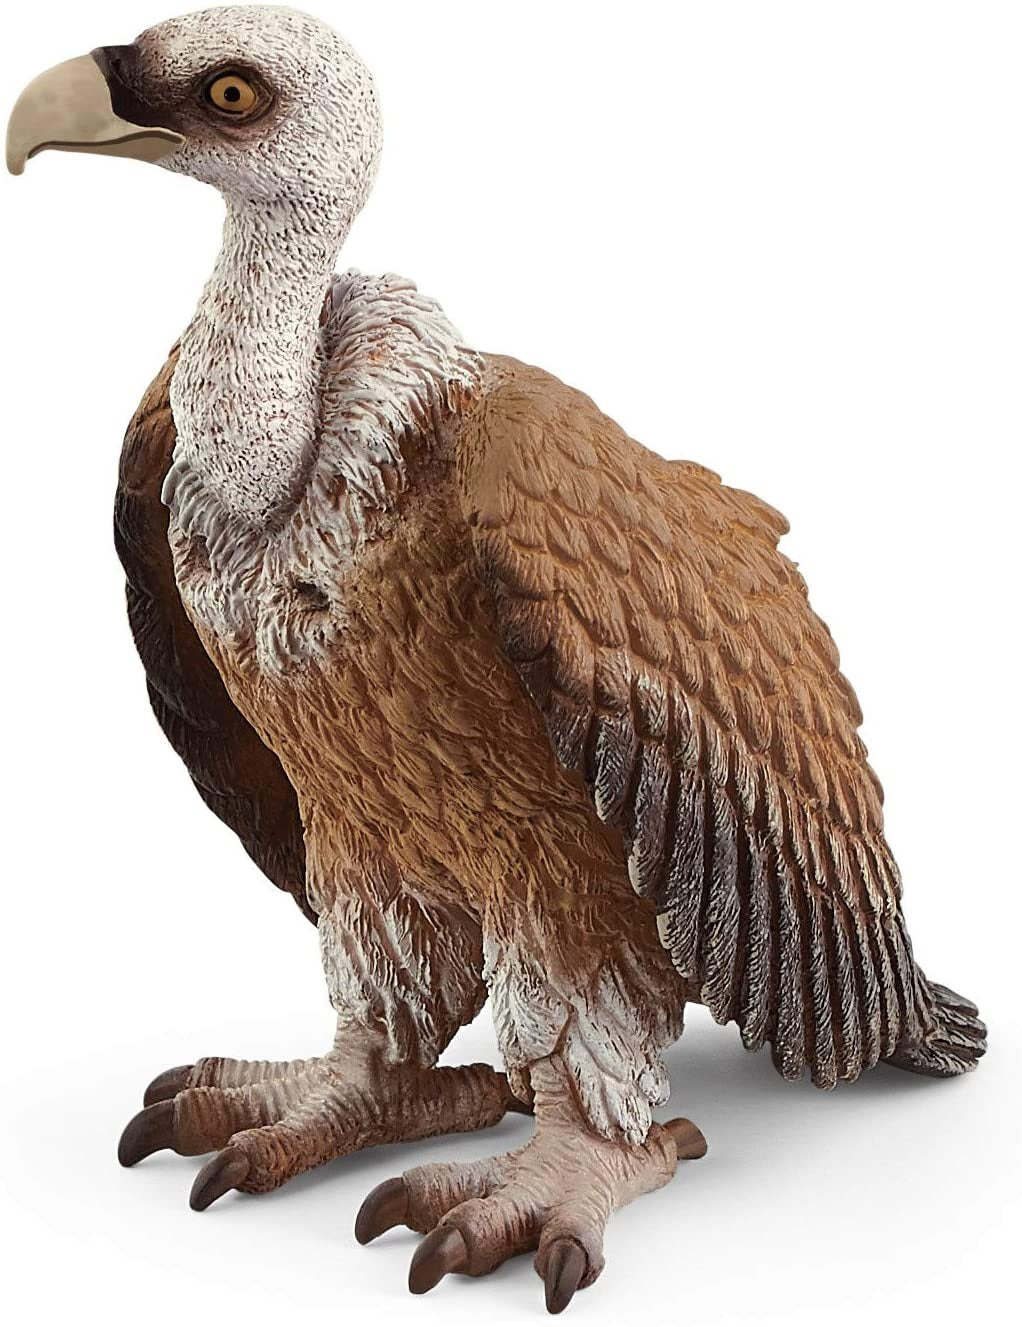 Schleich 14847 Wild Life Vulture, Brown & White